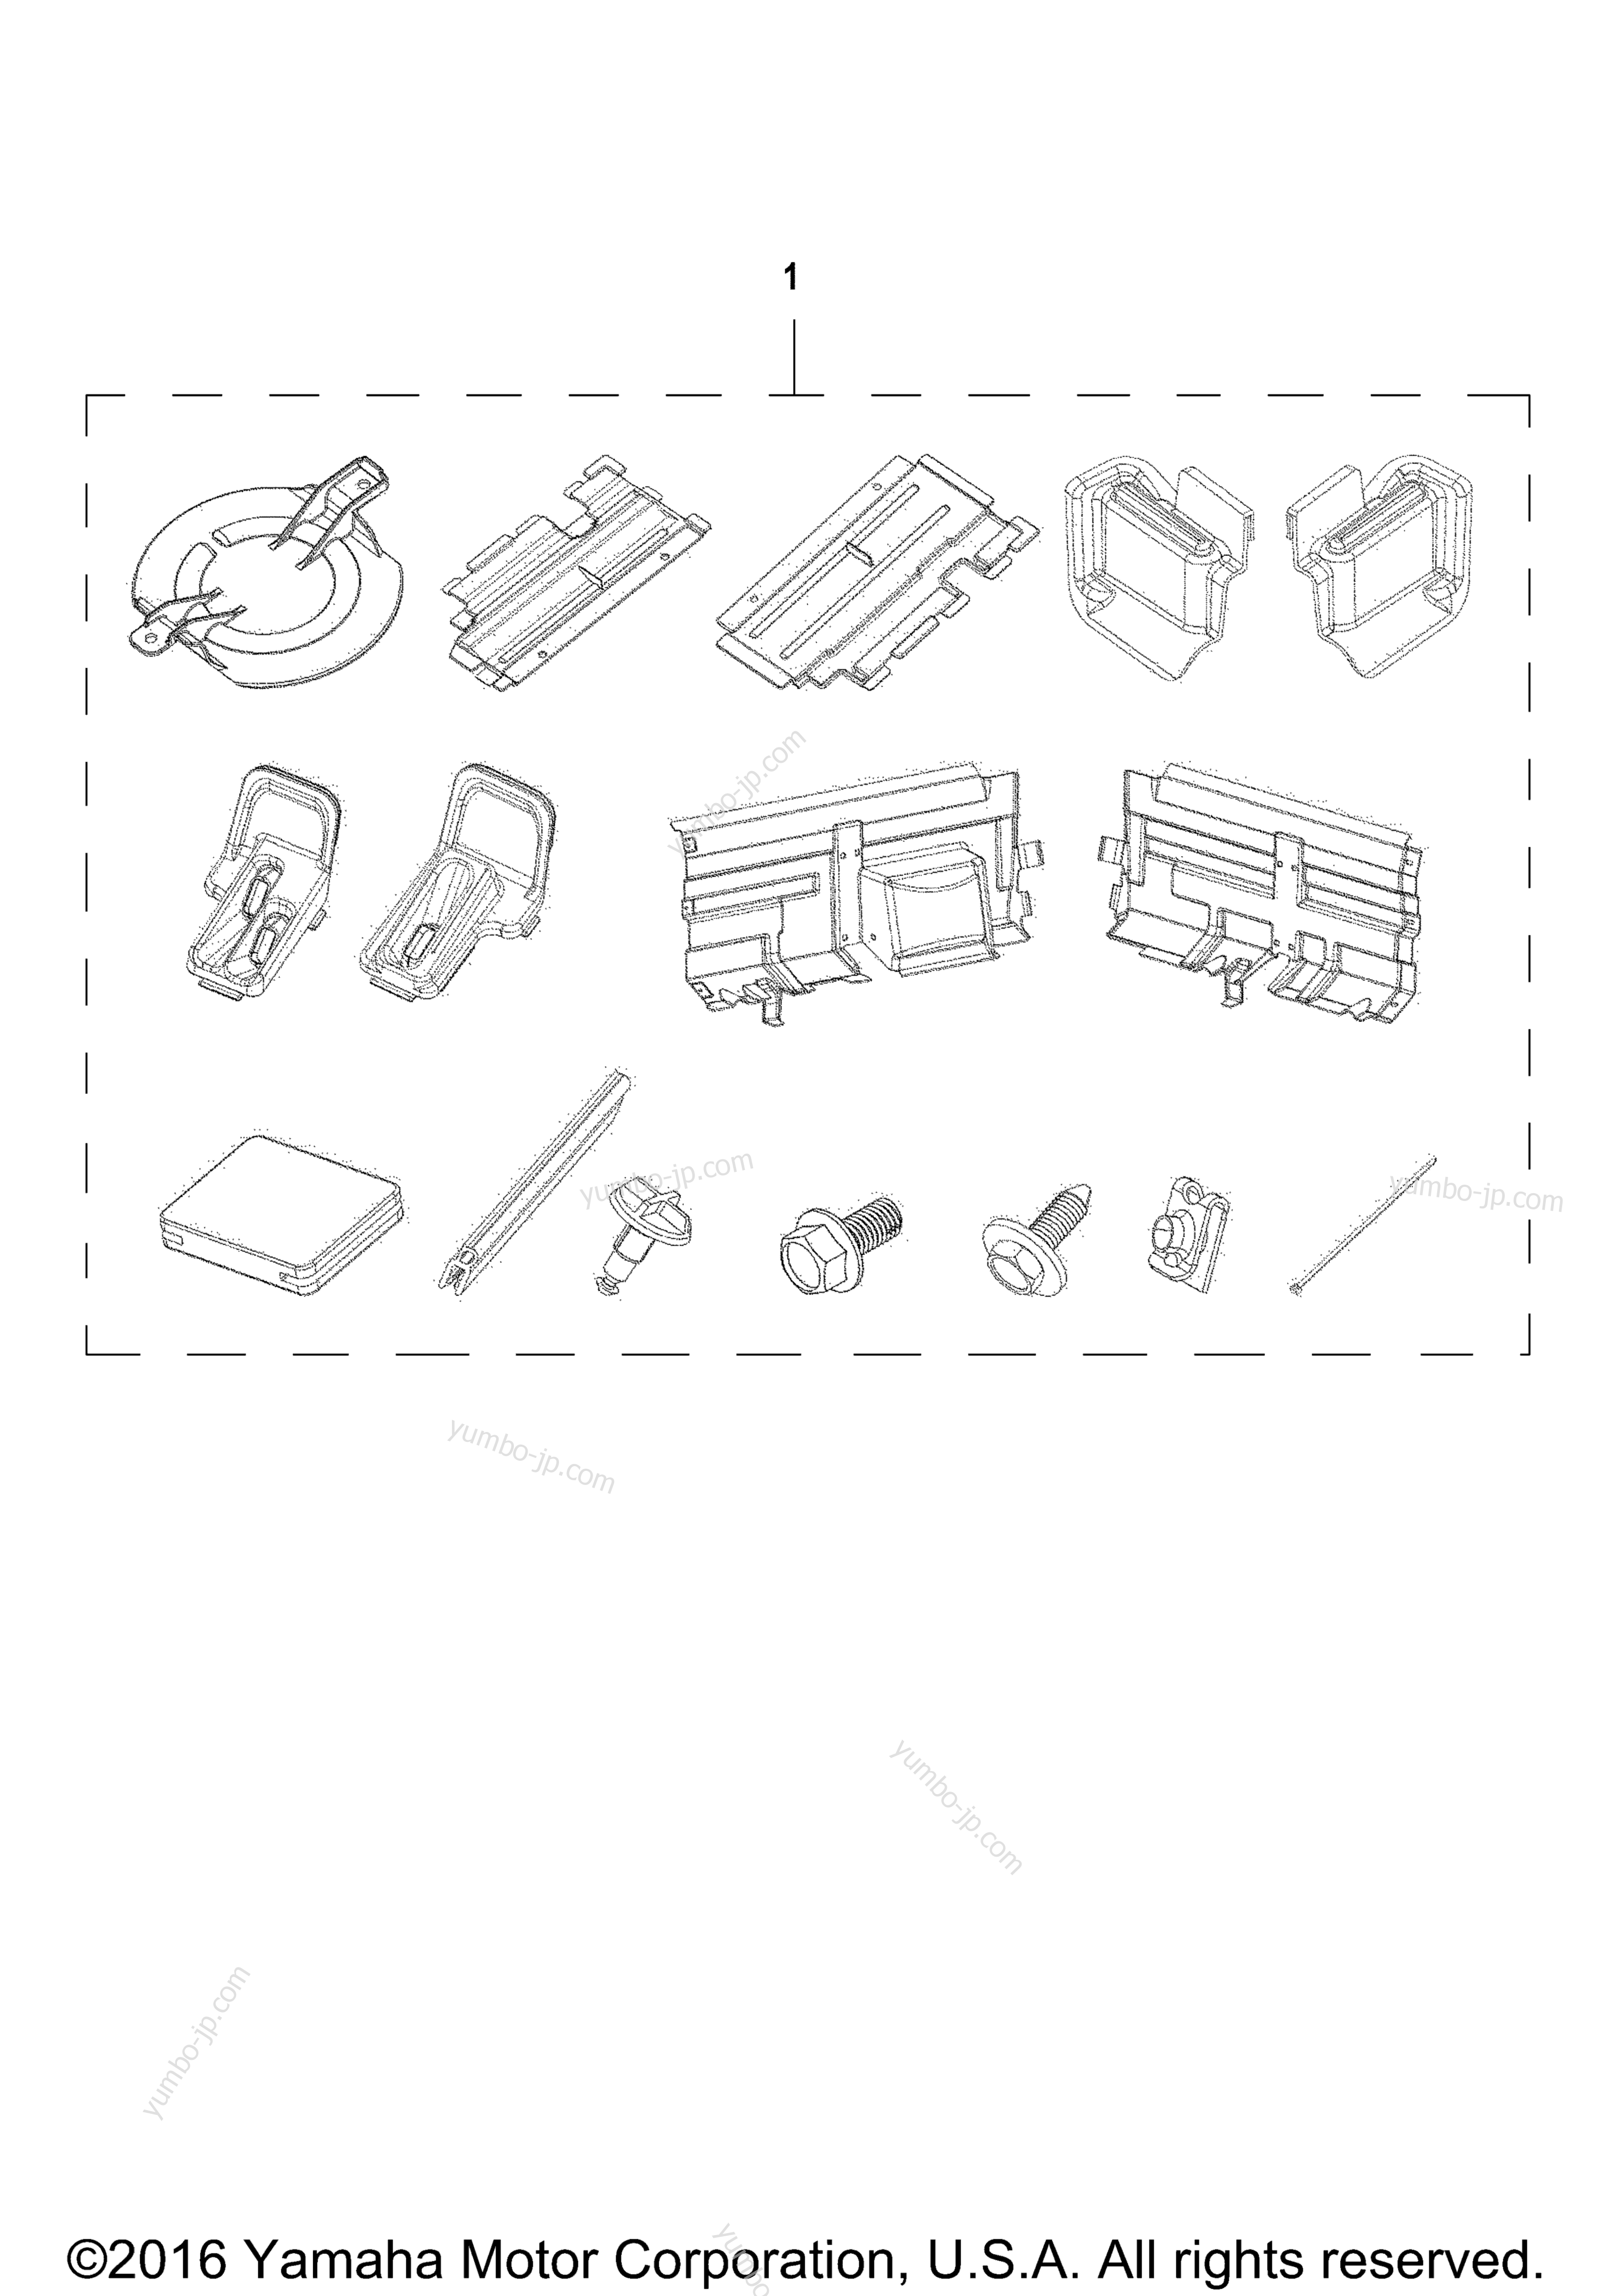 Alternate Parts для мотовездеходов YAMAHA VIKING (YXM700DFR) 2015 г.